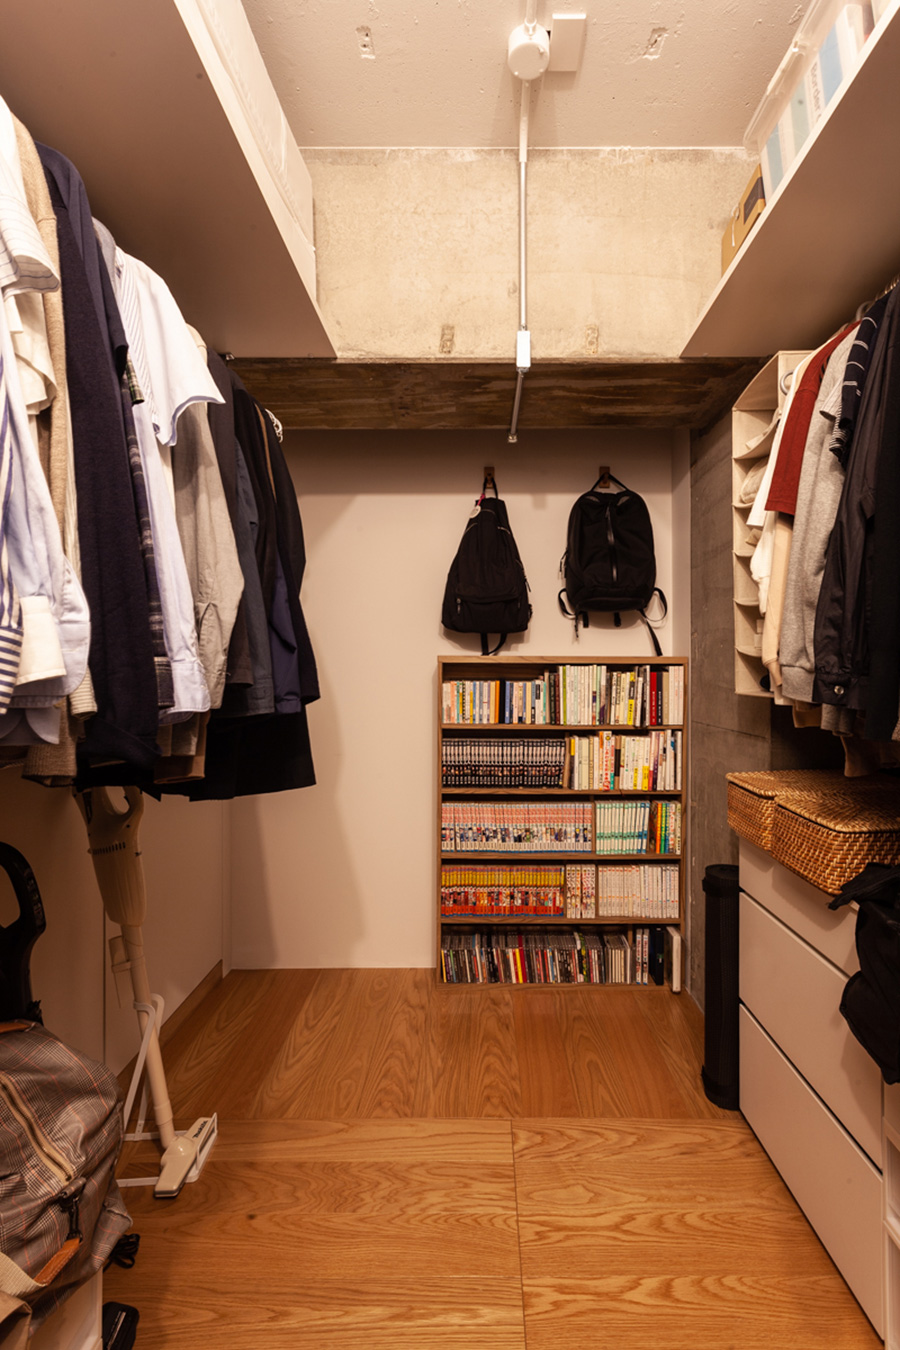 すべての衣類を一括にまとめたクローゼット。本棚もちょうどよく収まった。